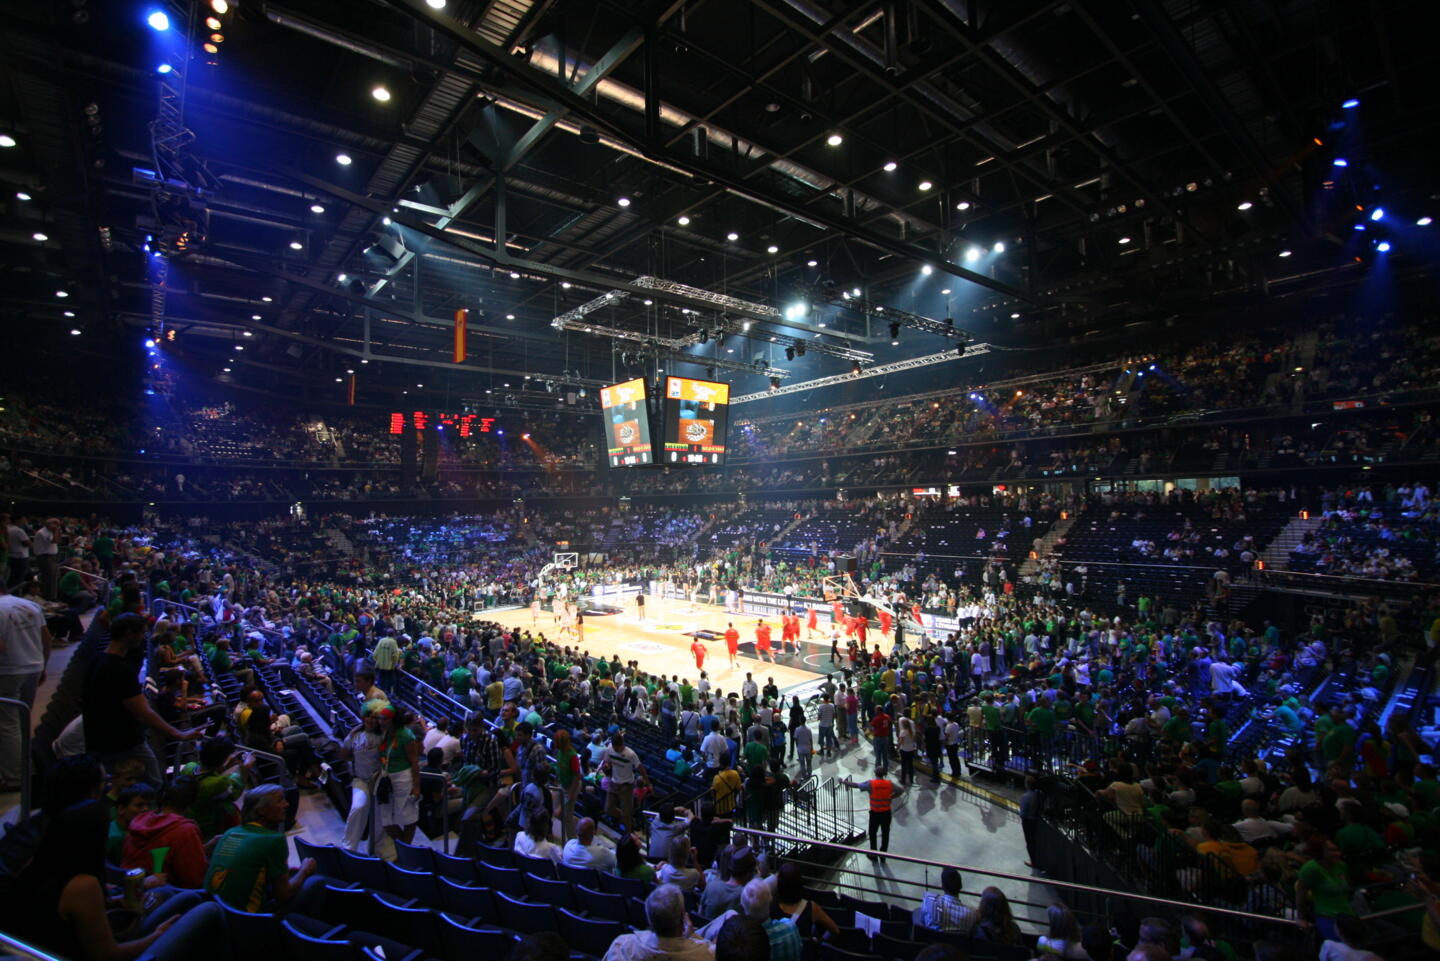 Vue intérieure d'une arène sportive bondée lors d'un événement de basketball, avec des spectateurs en tenue verte et l'action au centre sur le parquet éclairé.